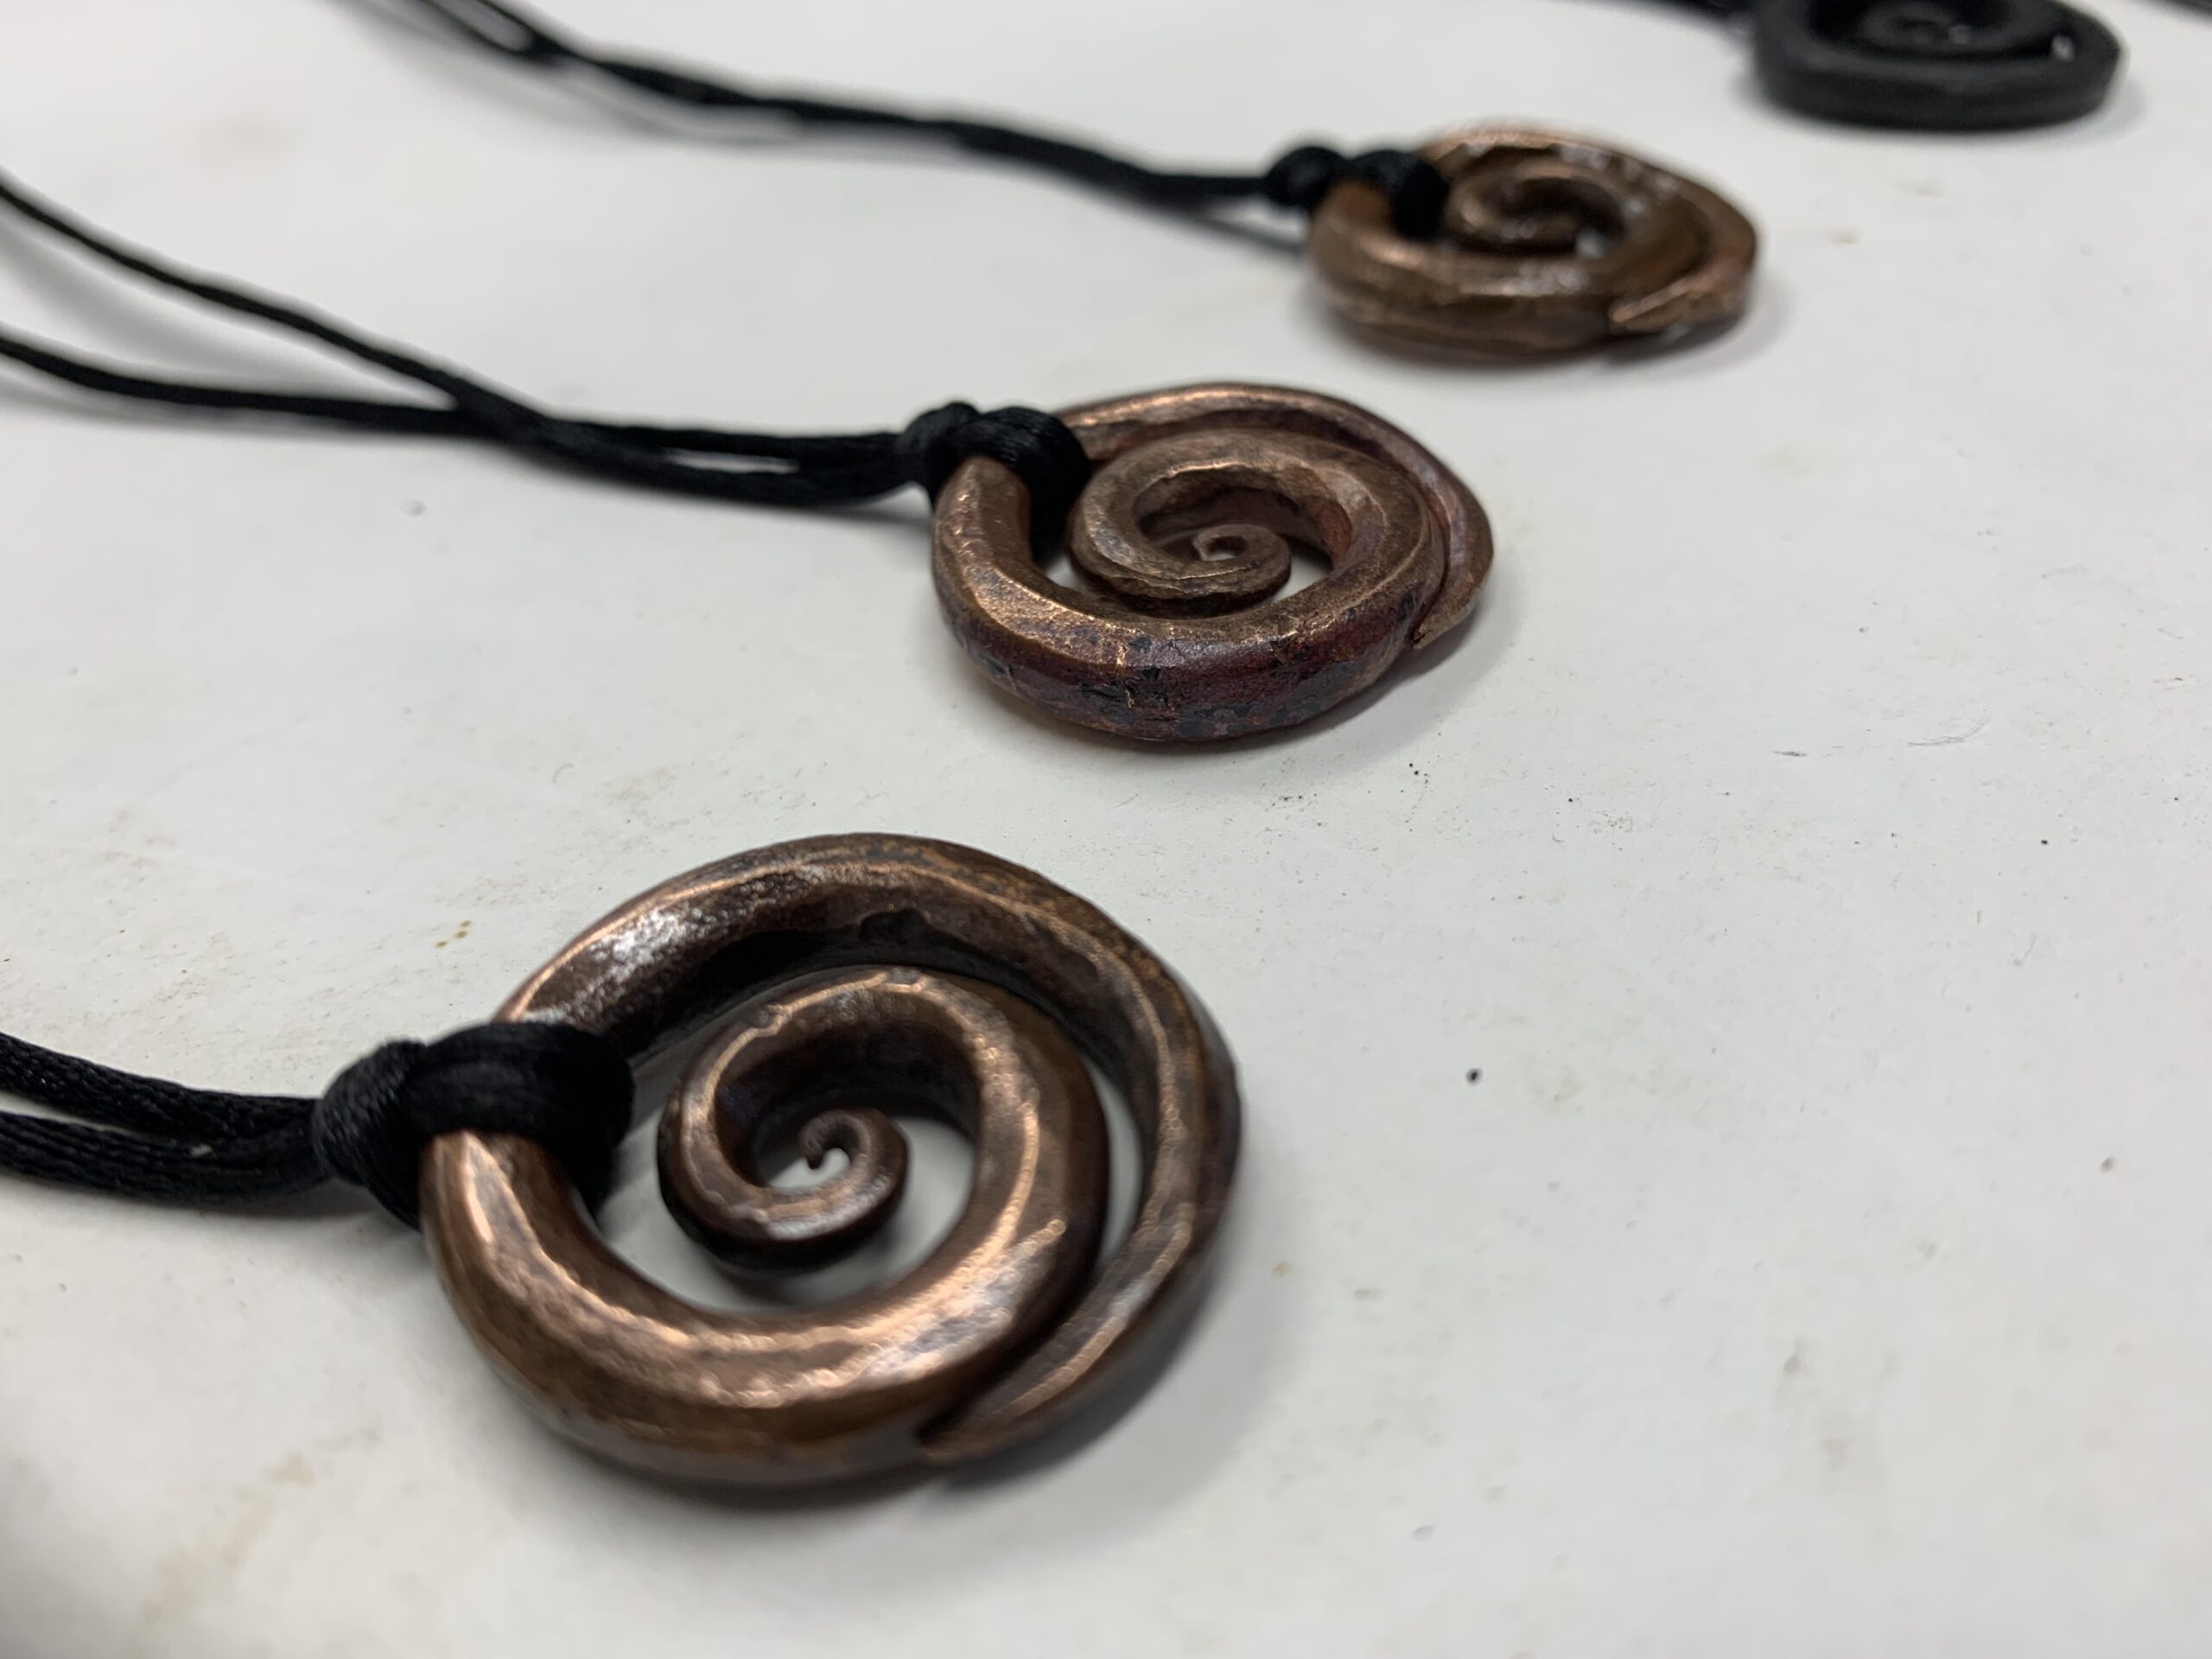 copper swirl pendant necklace